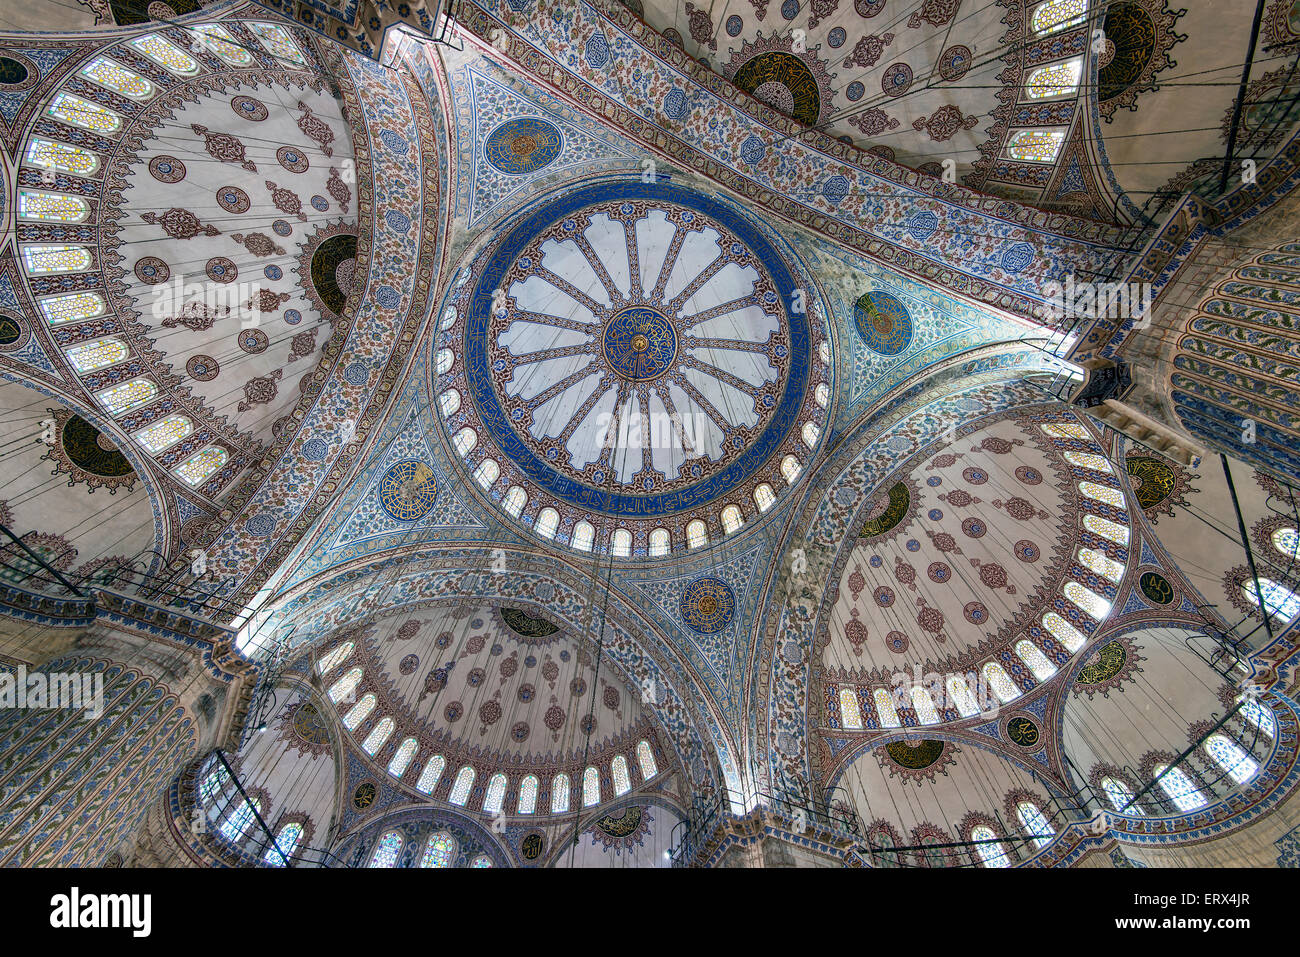 Low angle view of la coupole principale à l'intérieur de la Mosquée Sultan Ahmed ou Mosquée Bleue, Sultanahmet, Istanbul, Turquie Banque D'Images